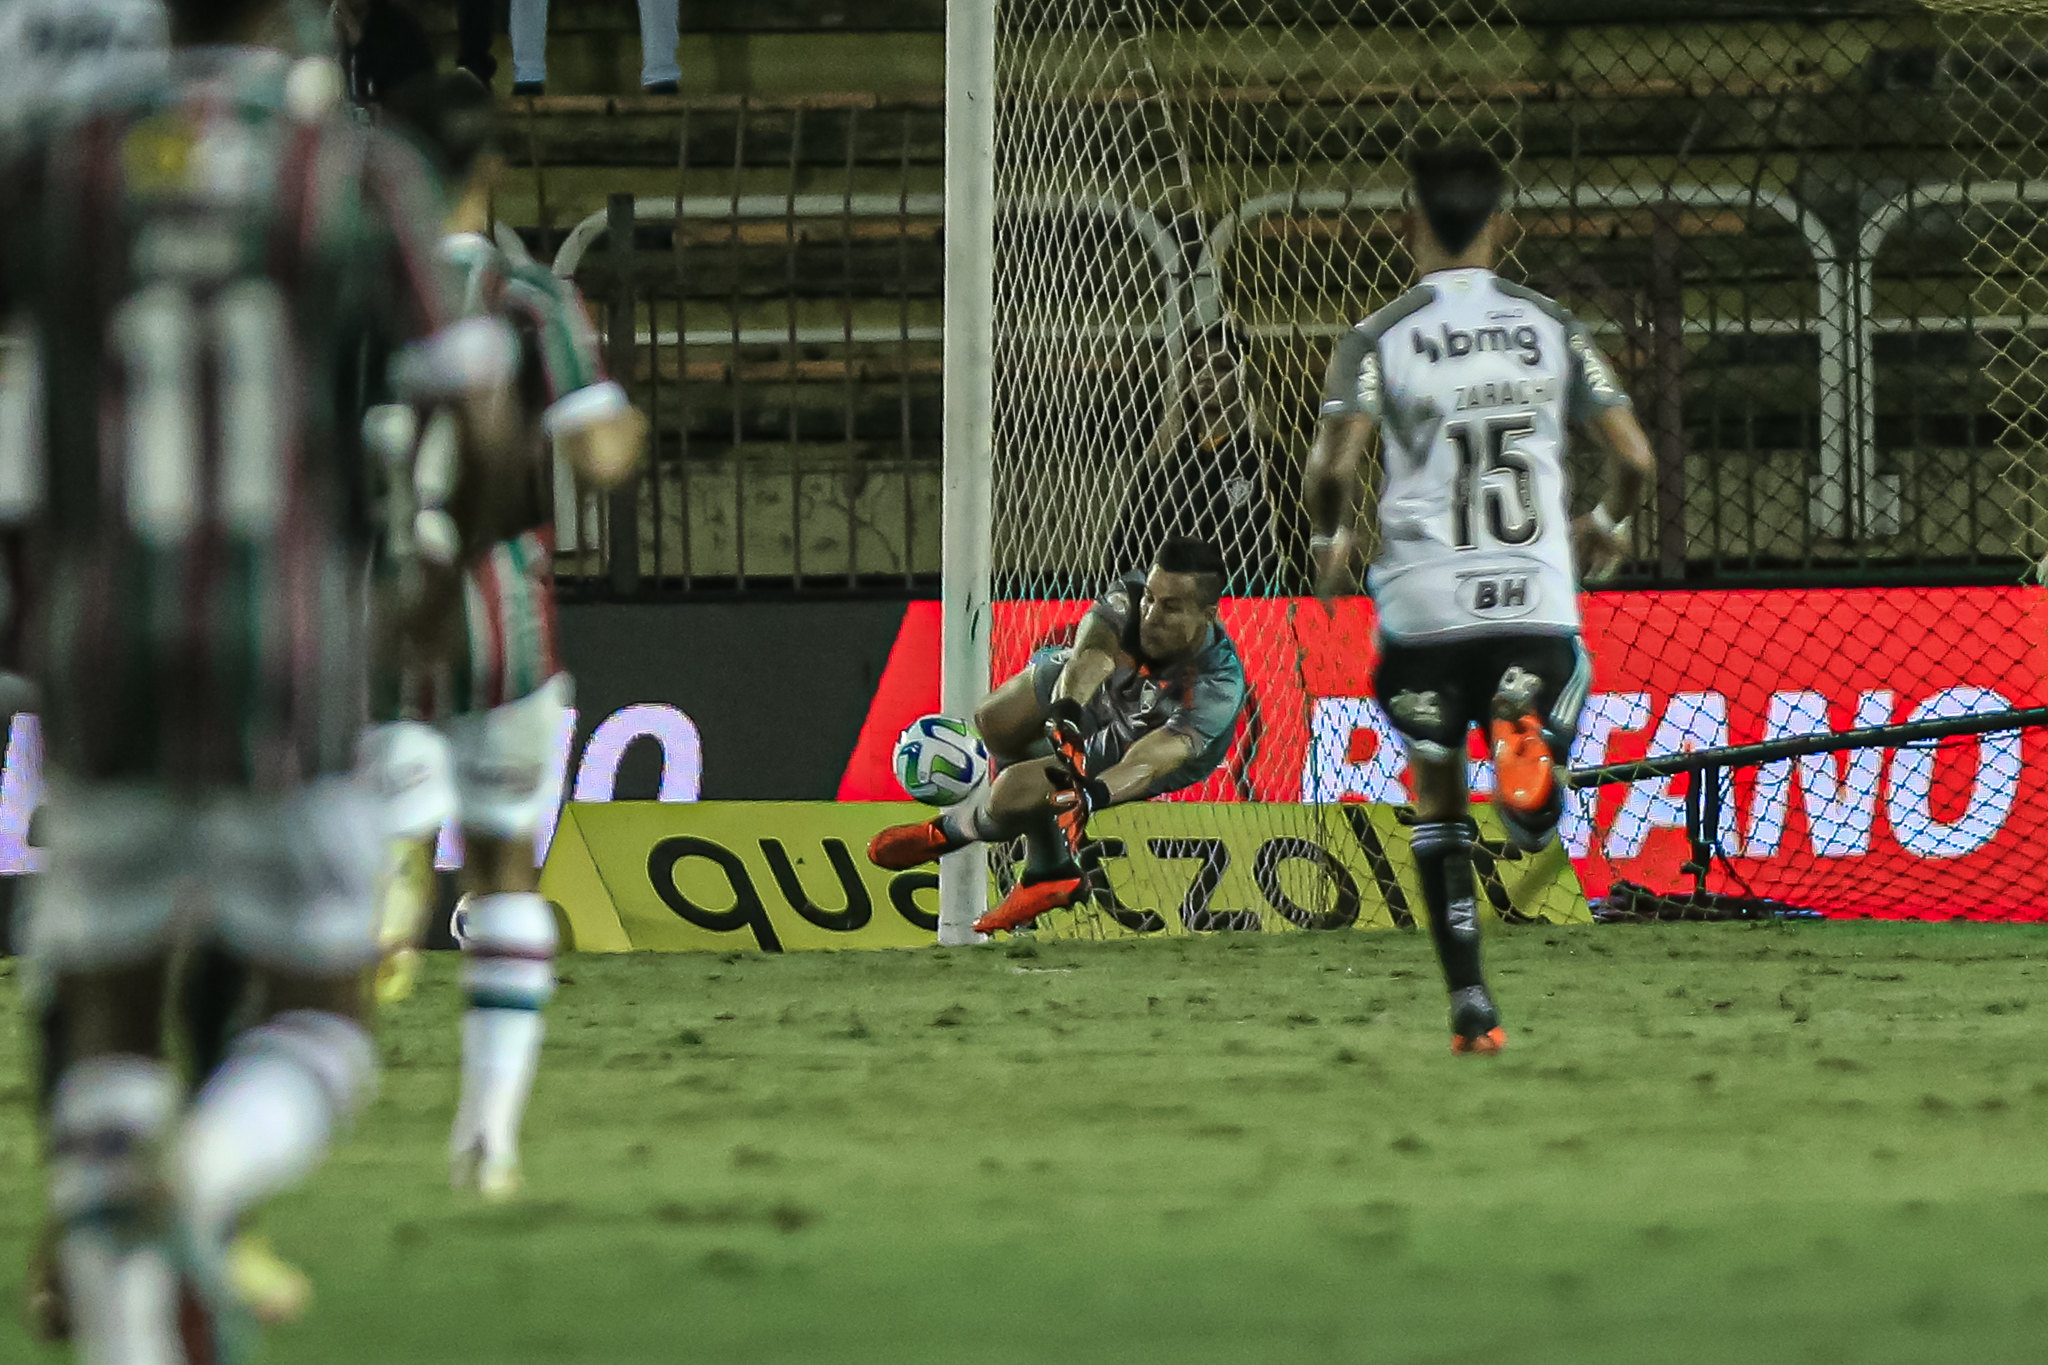 Fábio teve grande noite, apesar de atuação ruim do Fluminense (FOTO DE MARCELO GONÇALVES / FLUMINENSE FC)